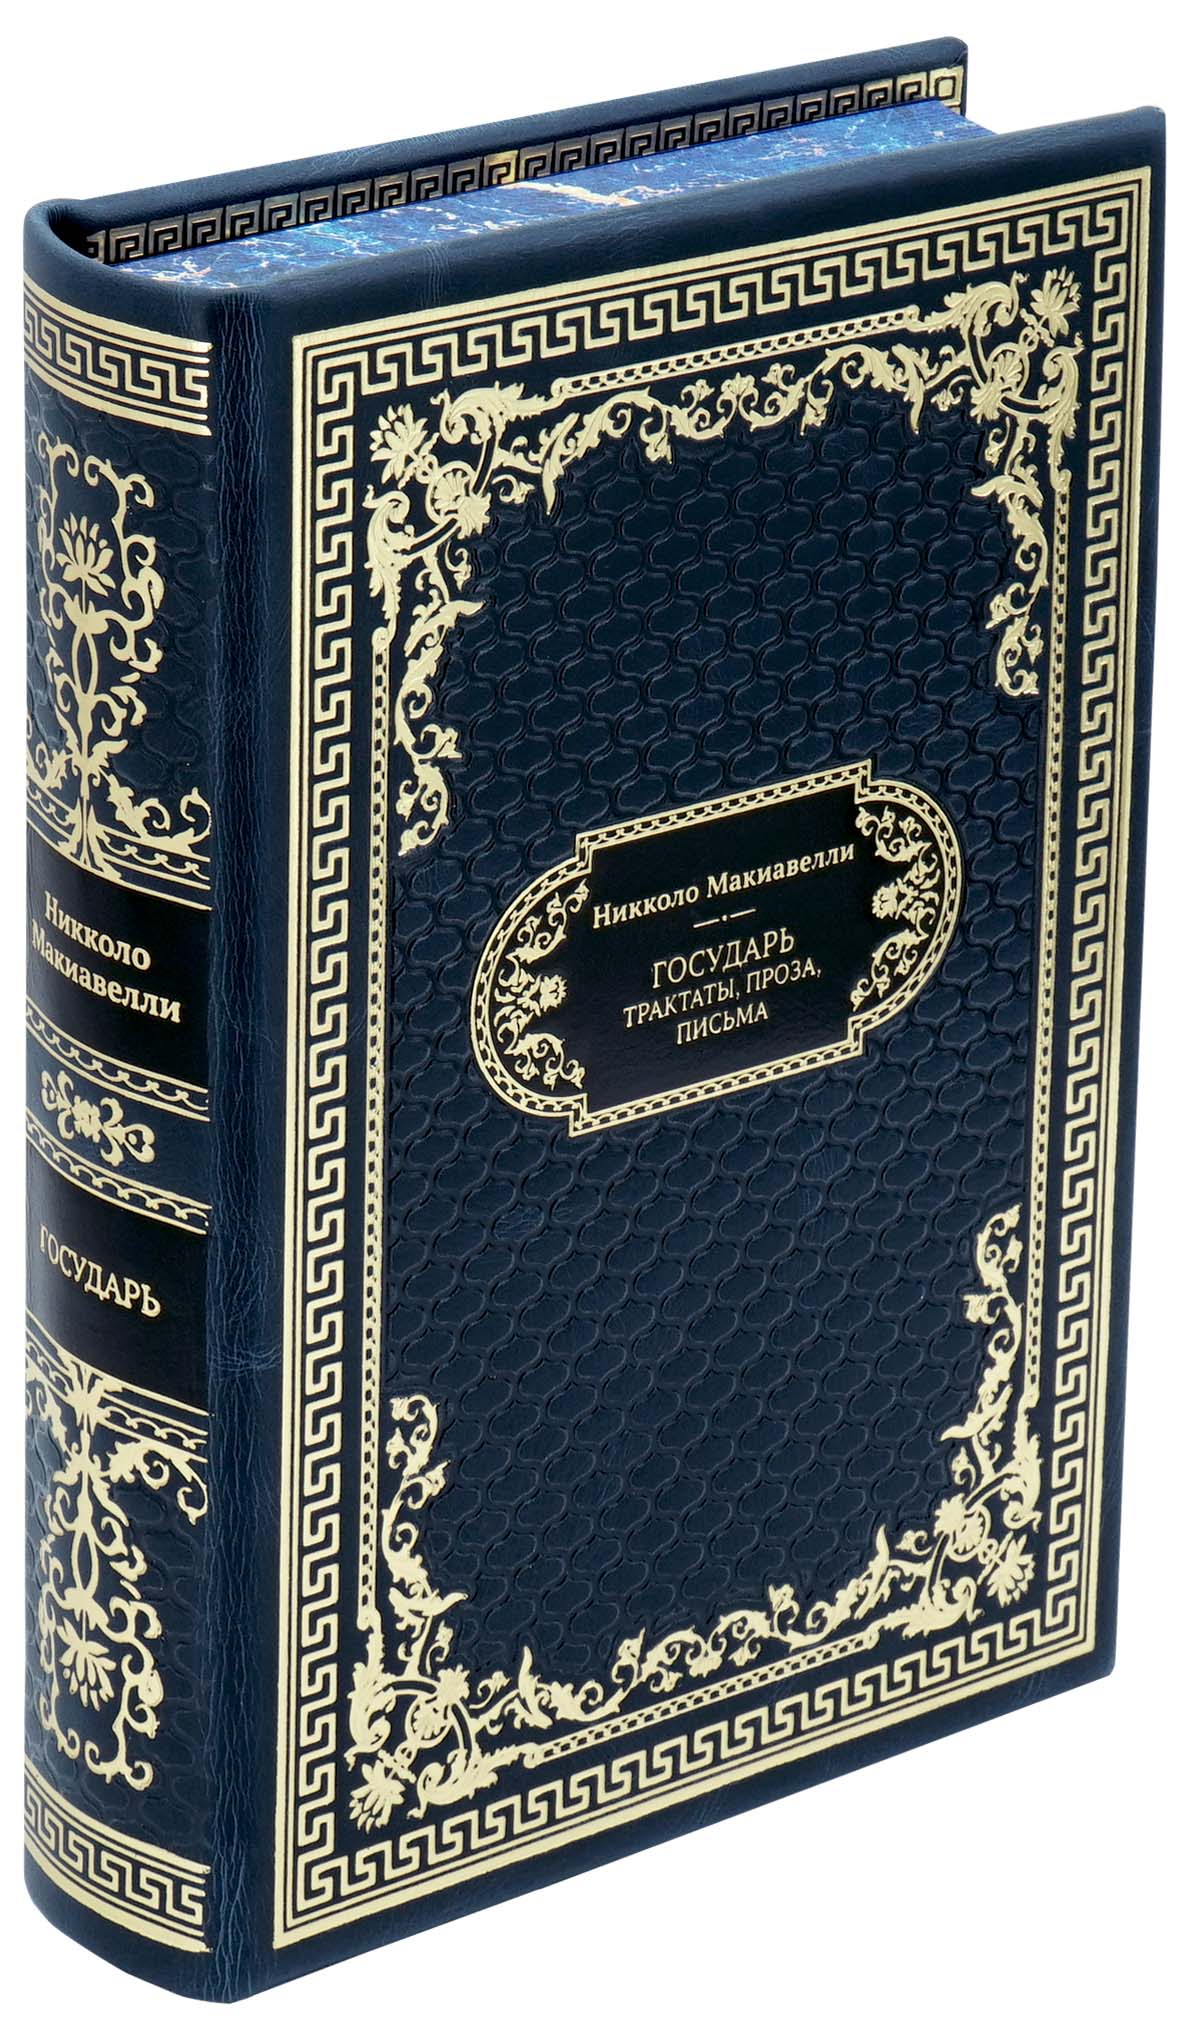 Никколо Макиавелли, Подарочная книга «Государь. Трактаты, проза, письма»